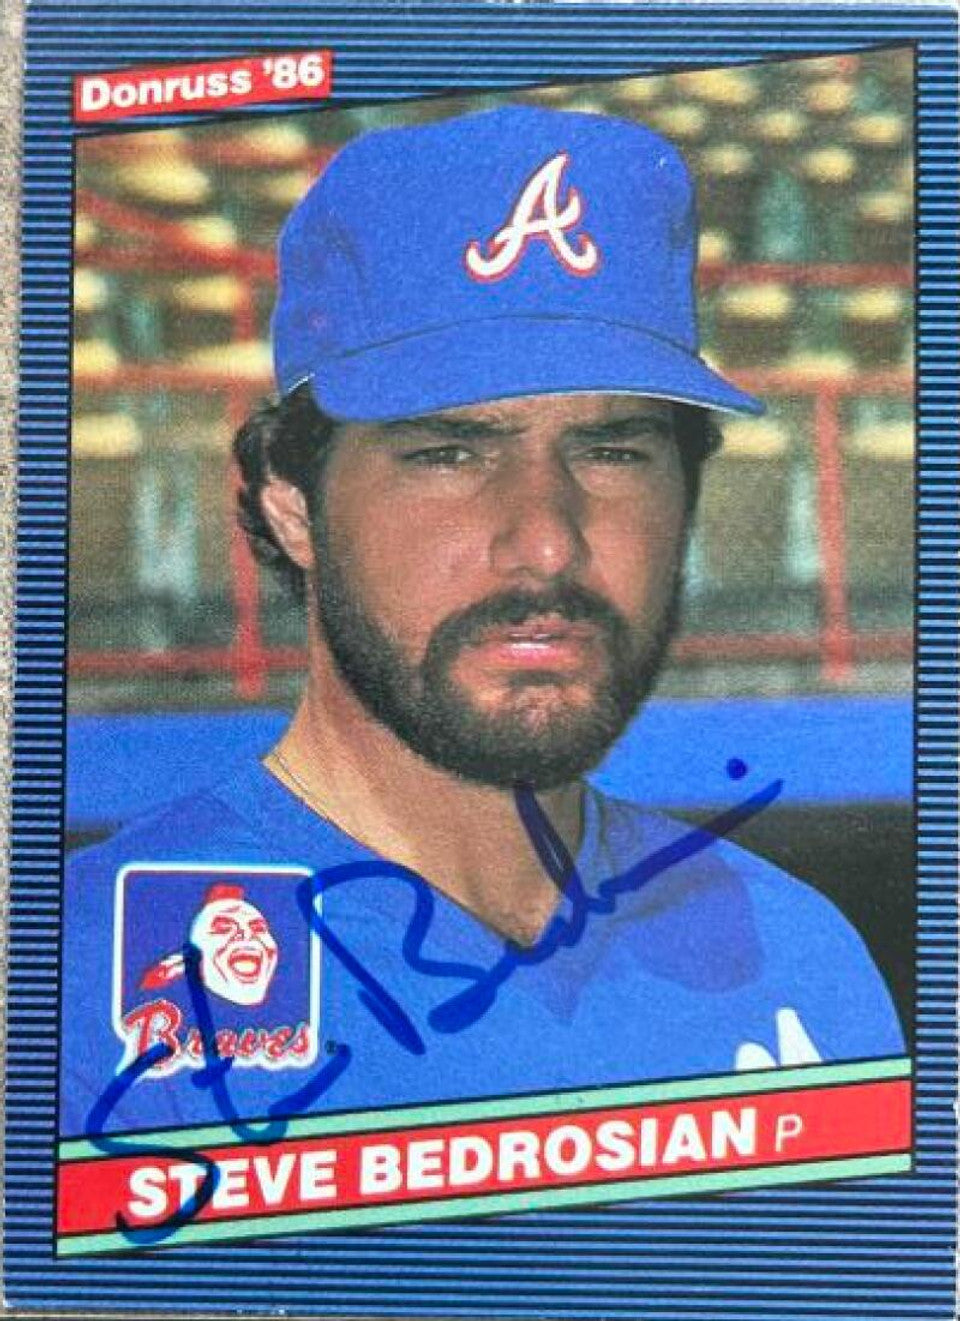 Steve Bedrosian Signed 1986 Donruss Baseball Card - Atlanta Braves